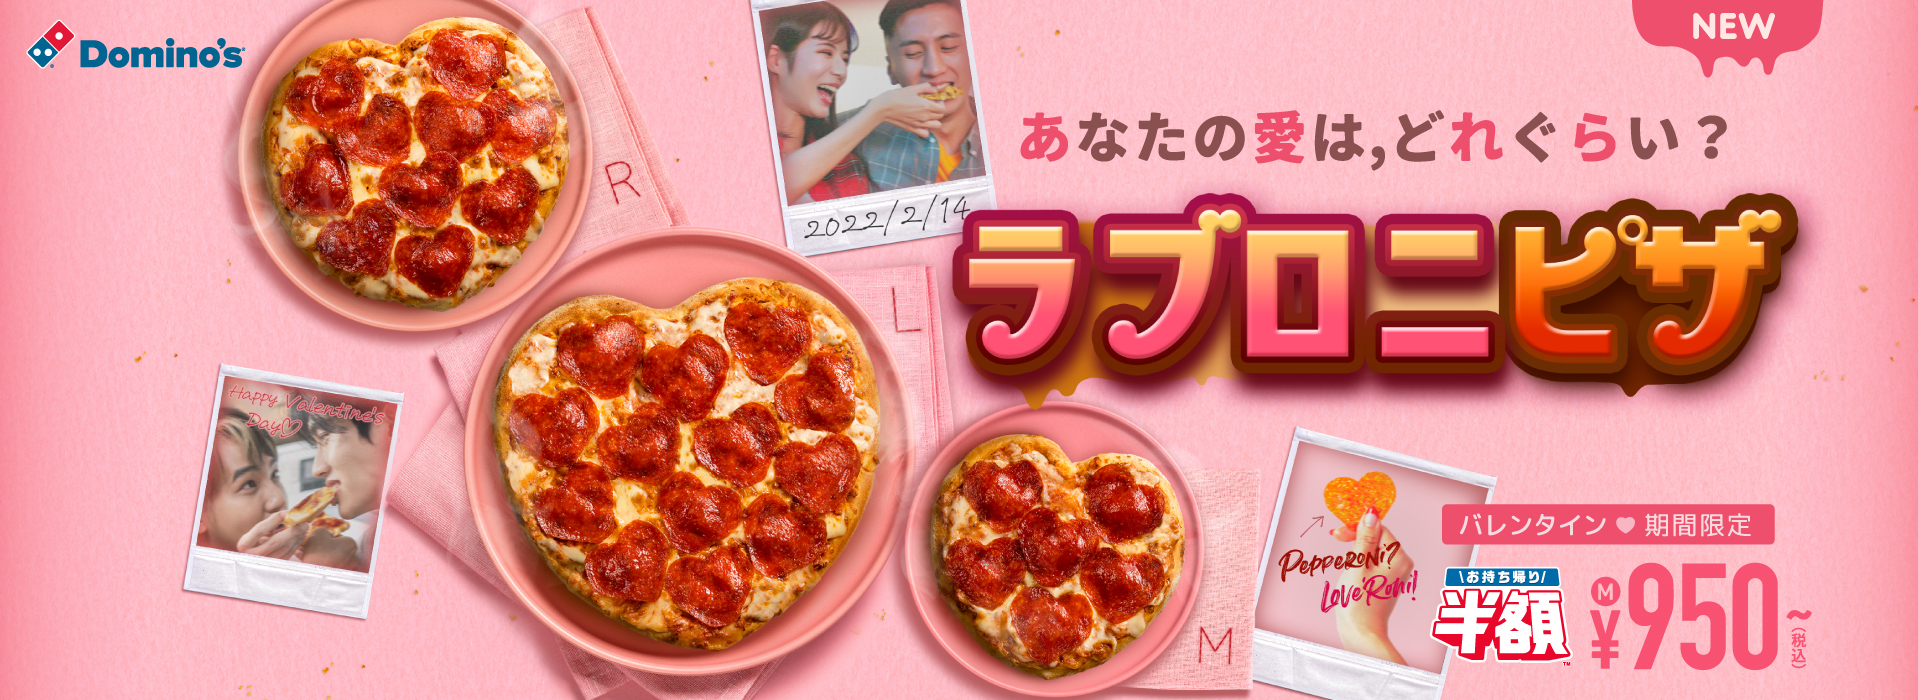 ドミノ ピザ バレンタイン限定 ラブロニピザ 1月31日販売 あなたの愛は どれぐらい 株式会社ドミノ ピザ ジャパンのプレスリリース